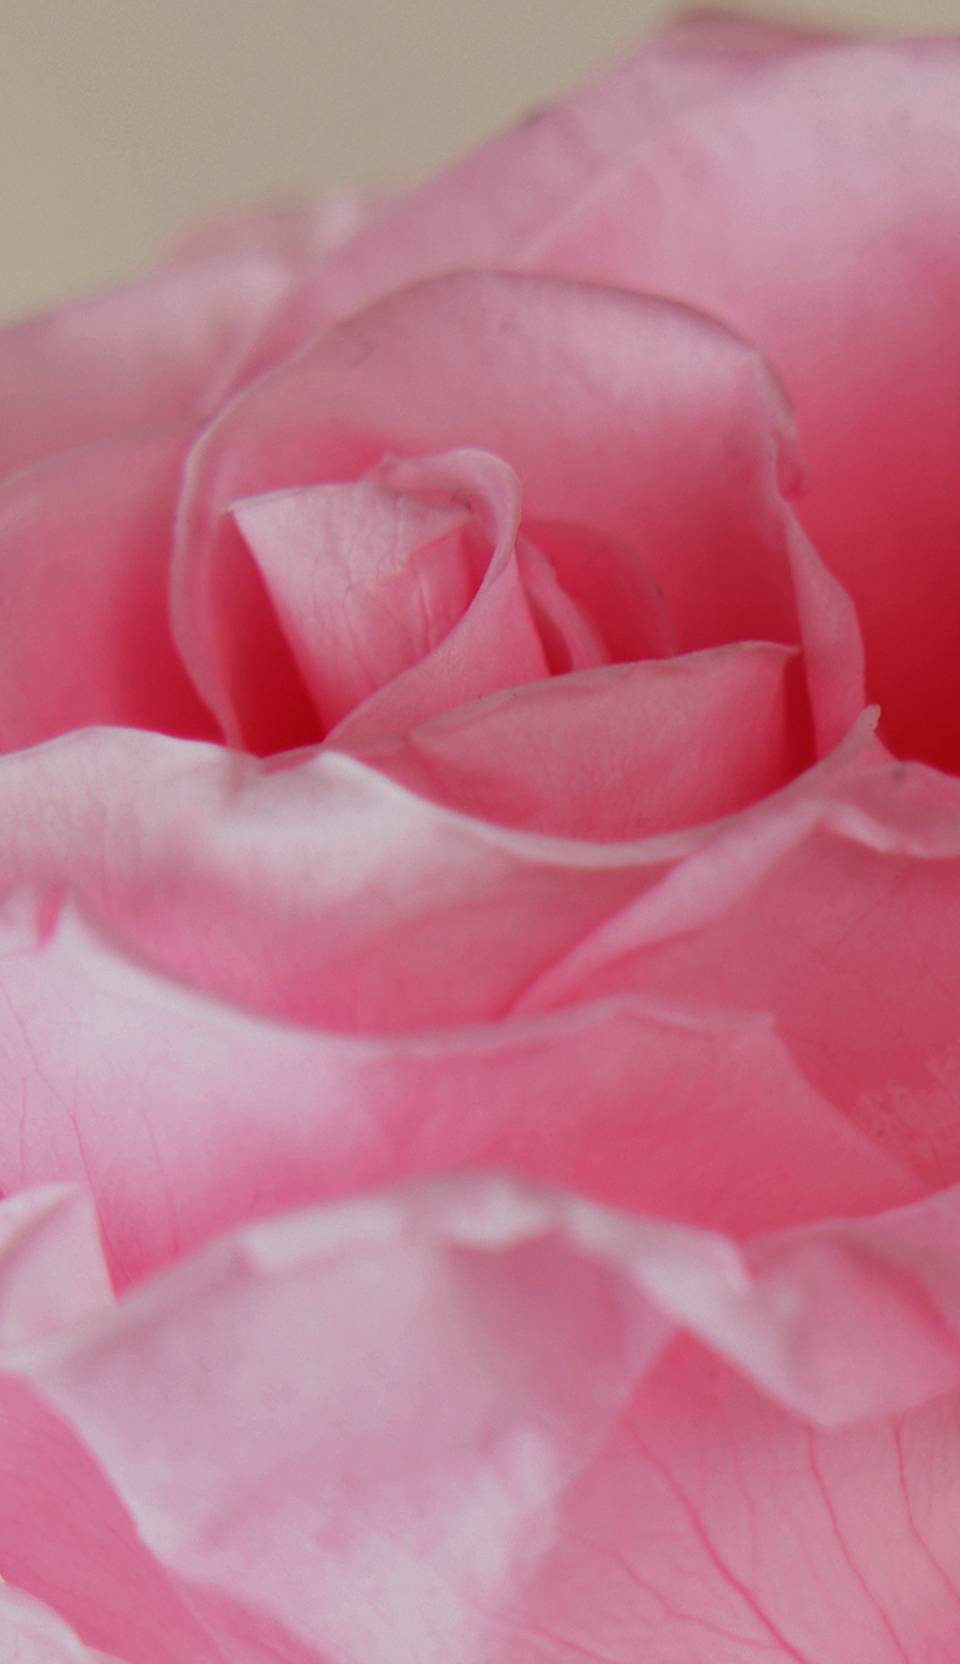 up close visual of bright pink rose